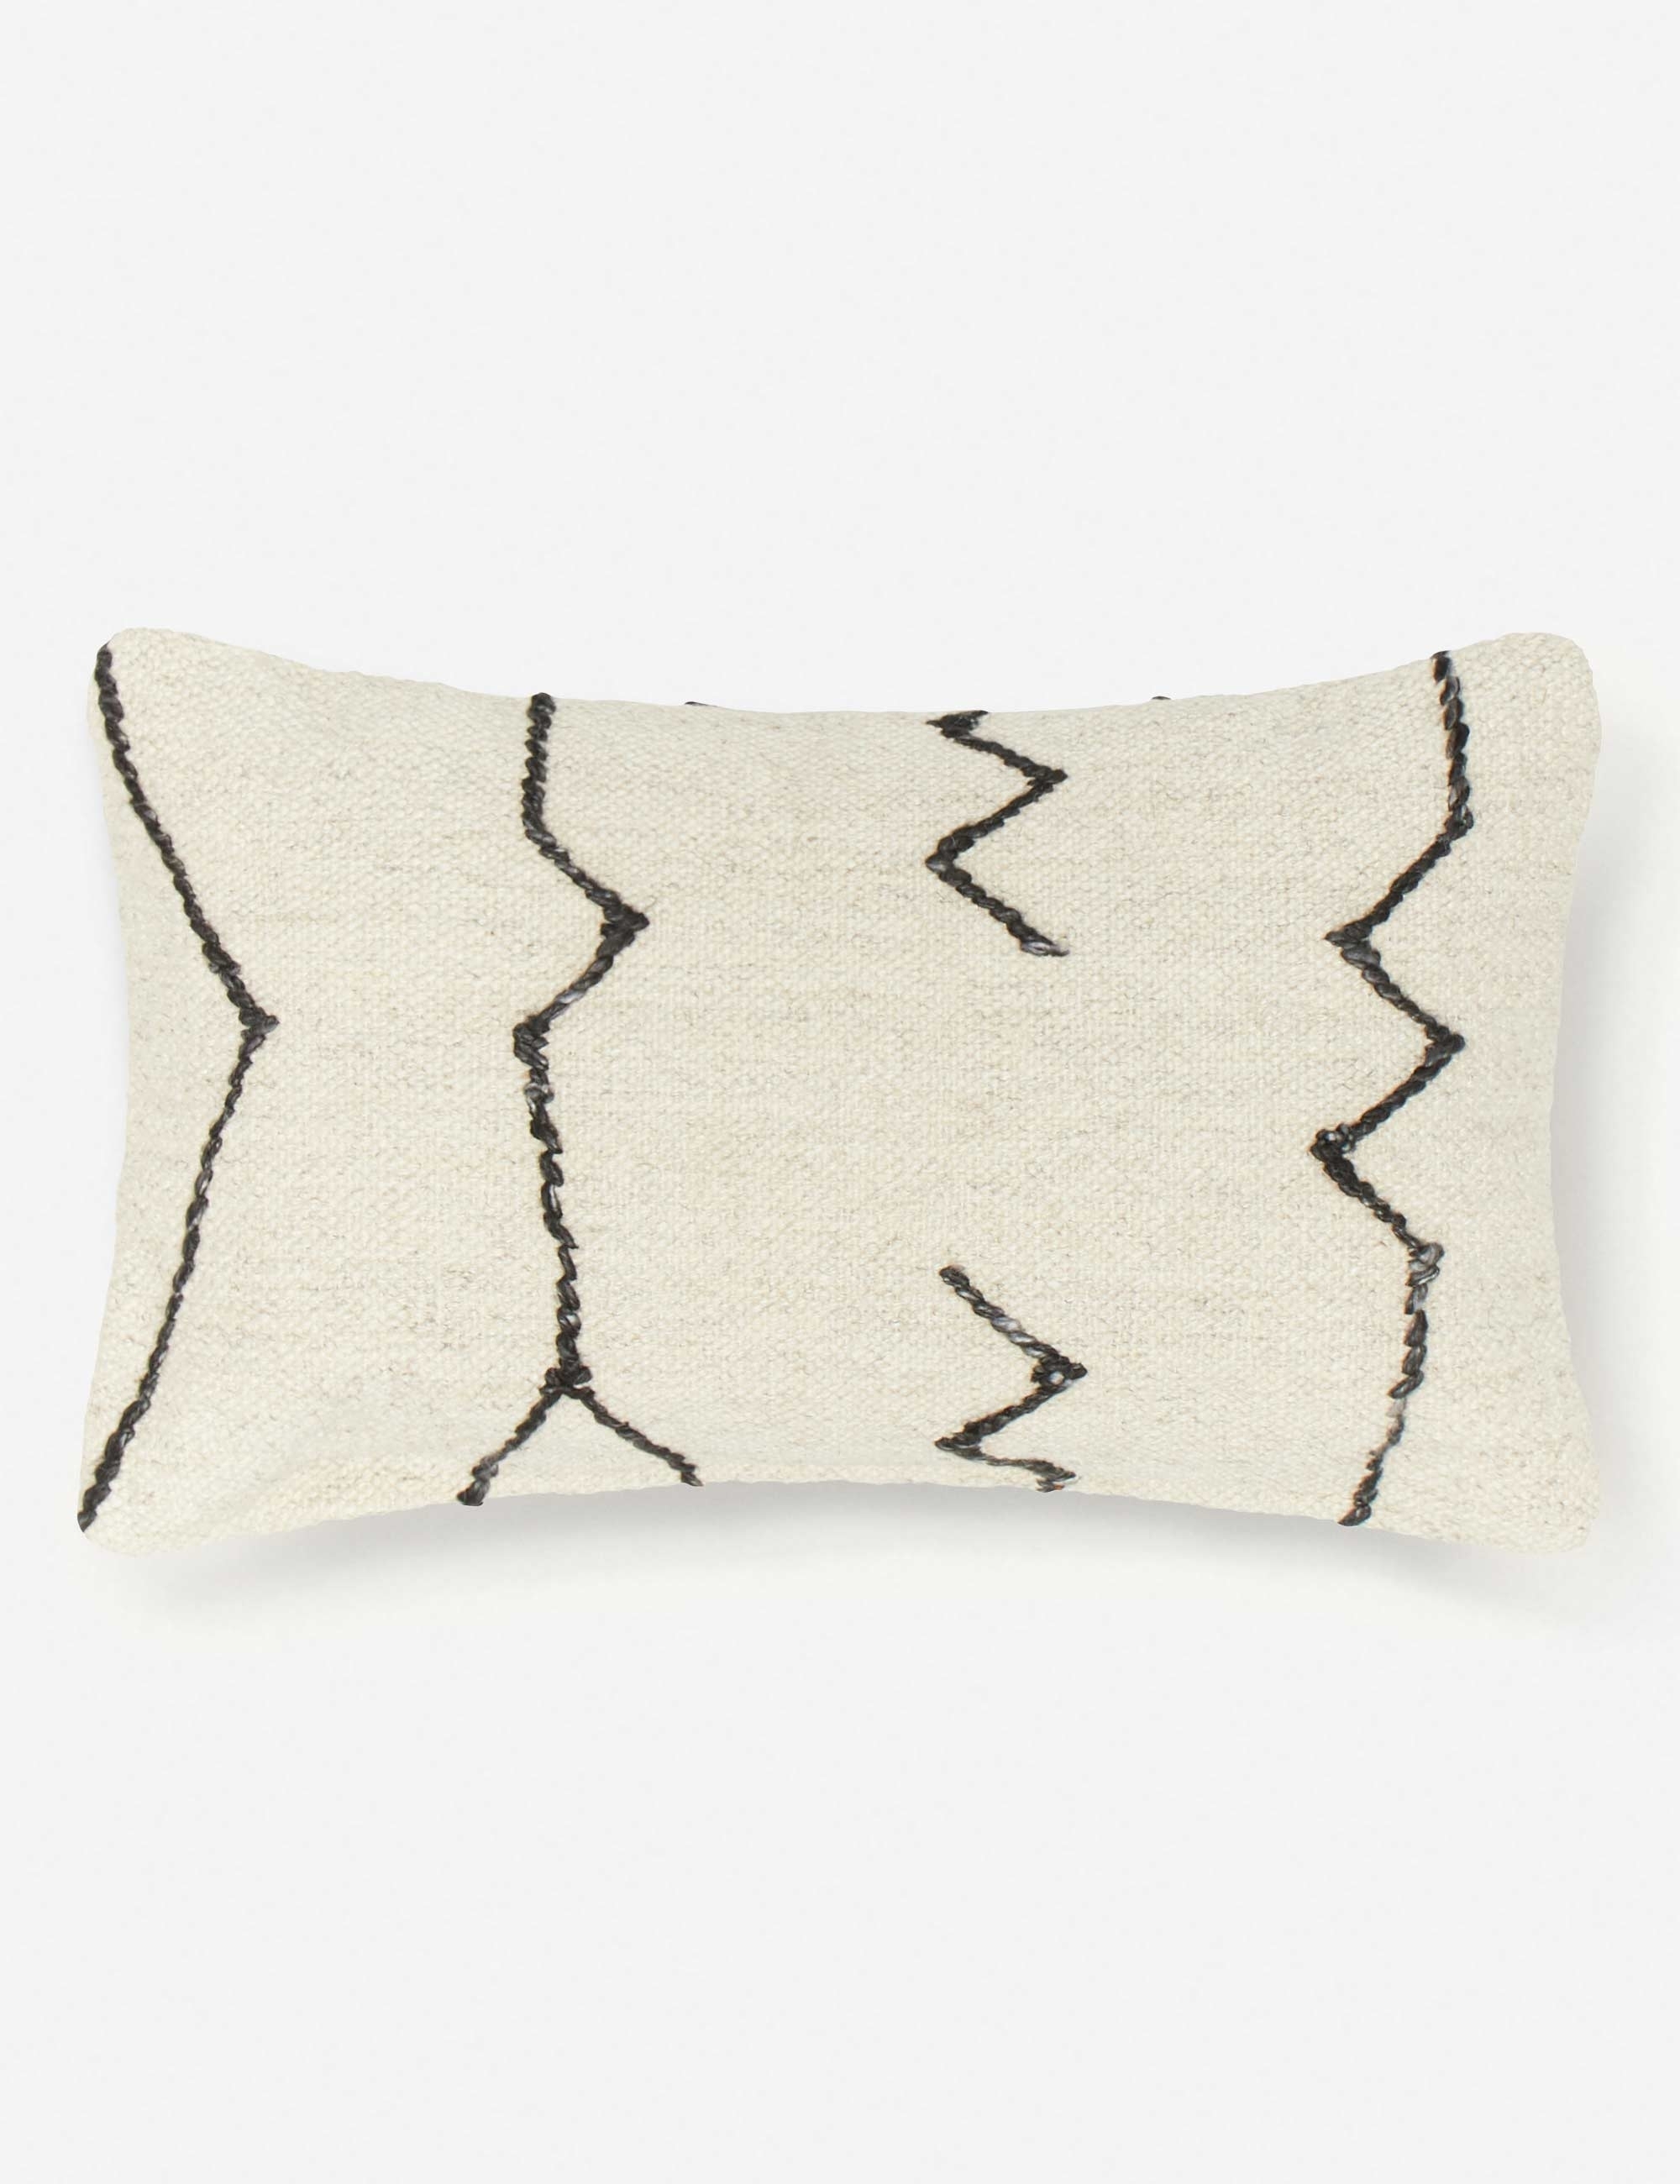 Moroccan Flatweave Lumbar Pillow, Black & Natural By Sarah Sherman Samuel - Image 0